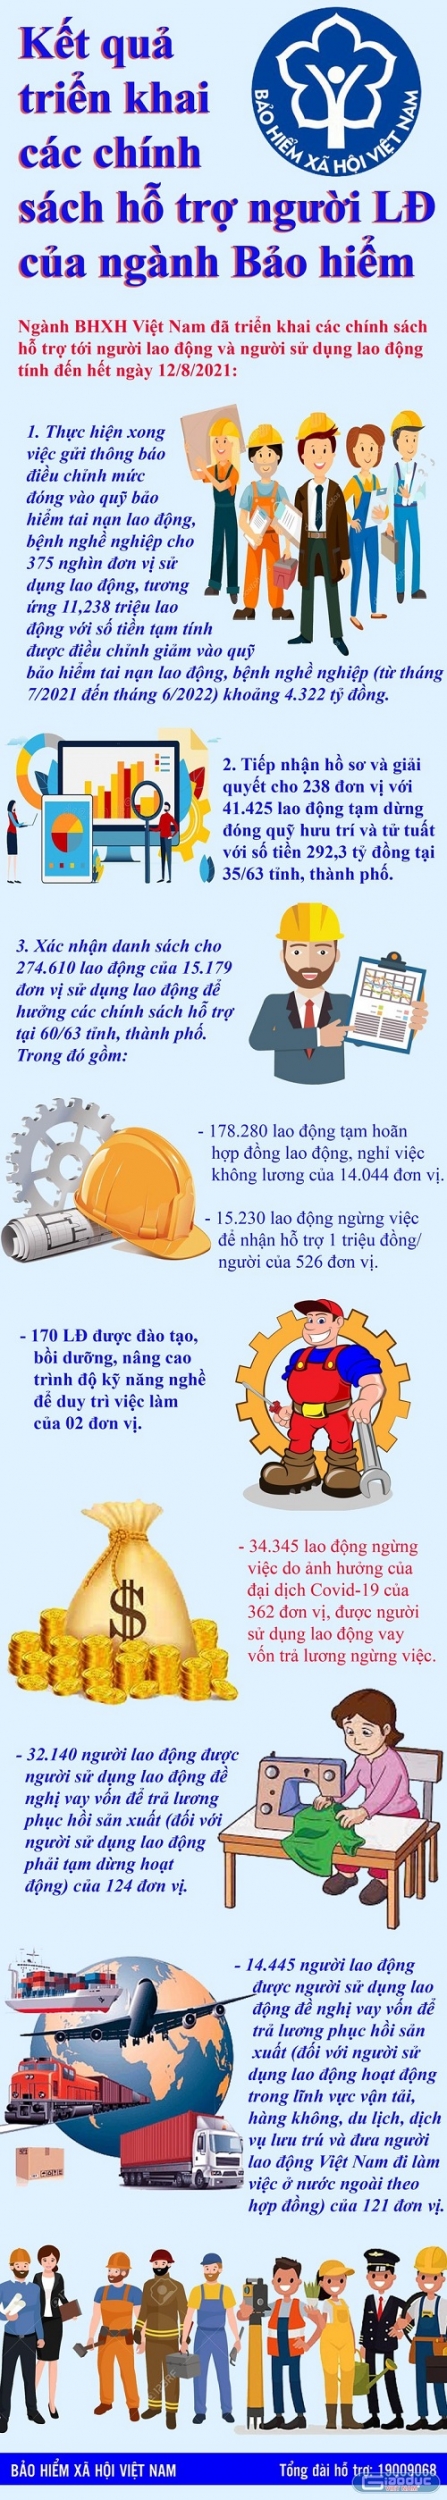 Bảo hiểm xã hội Việt Nam với kết quả triển khai các chính sách hỗ trợ người lao động